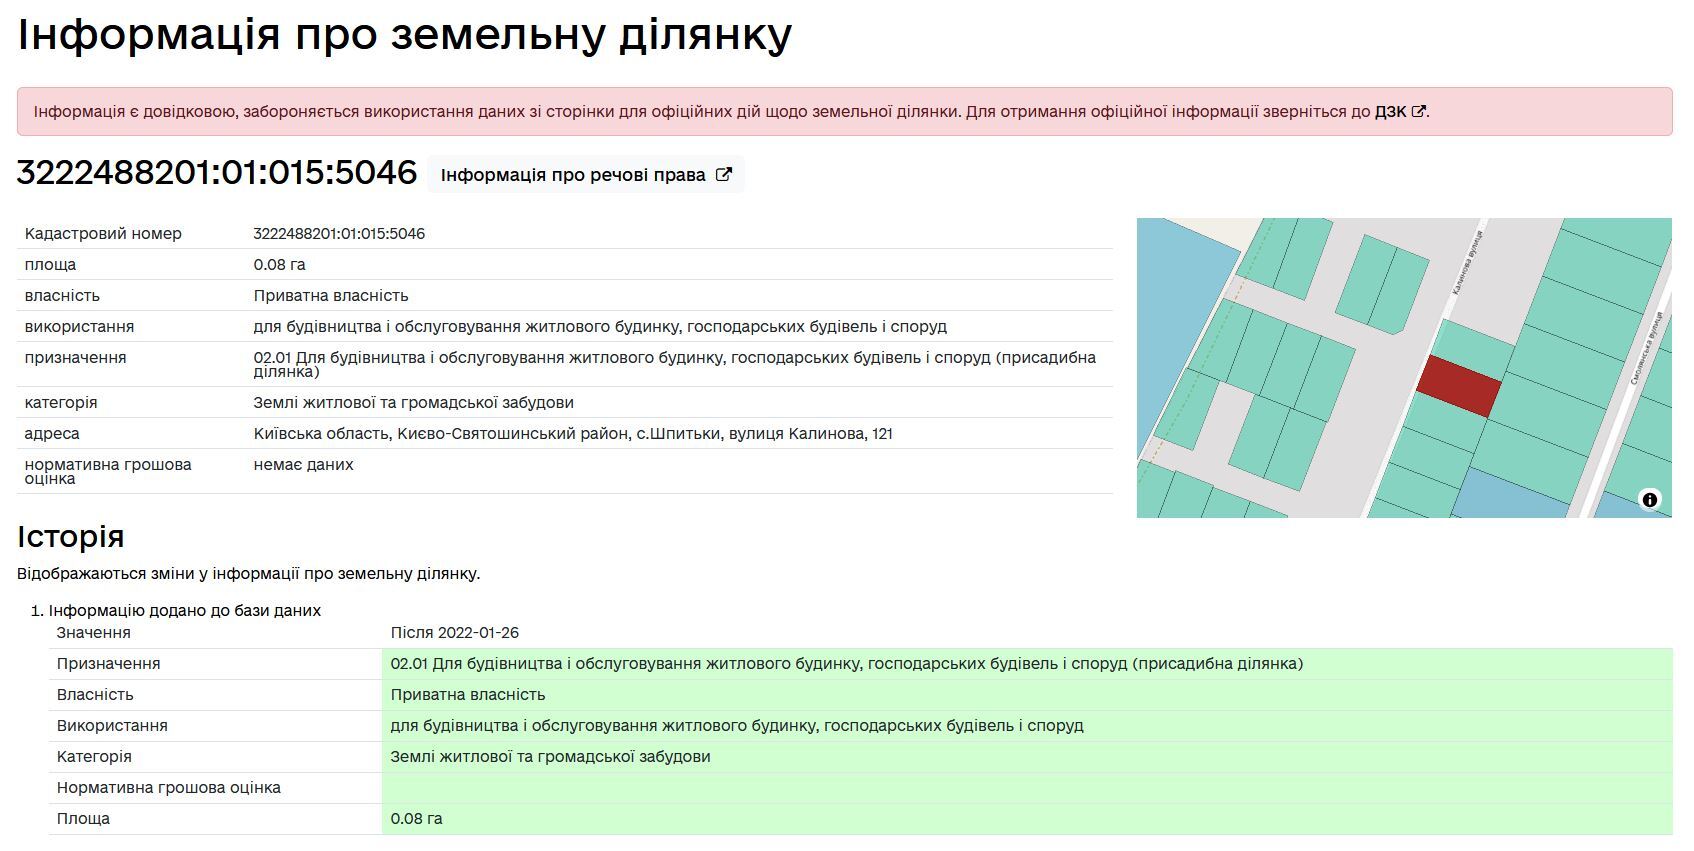 Продажа участка под индивидуальное жилое строительство 8 соток, Калинова, 121